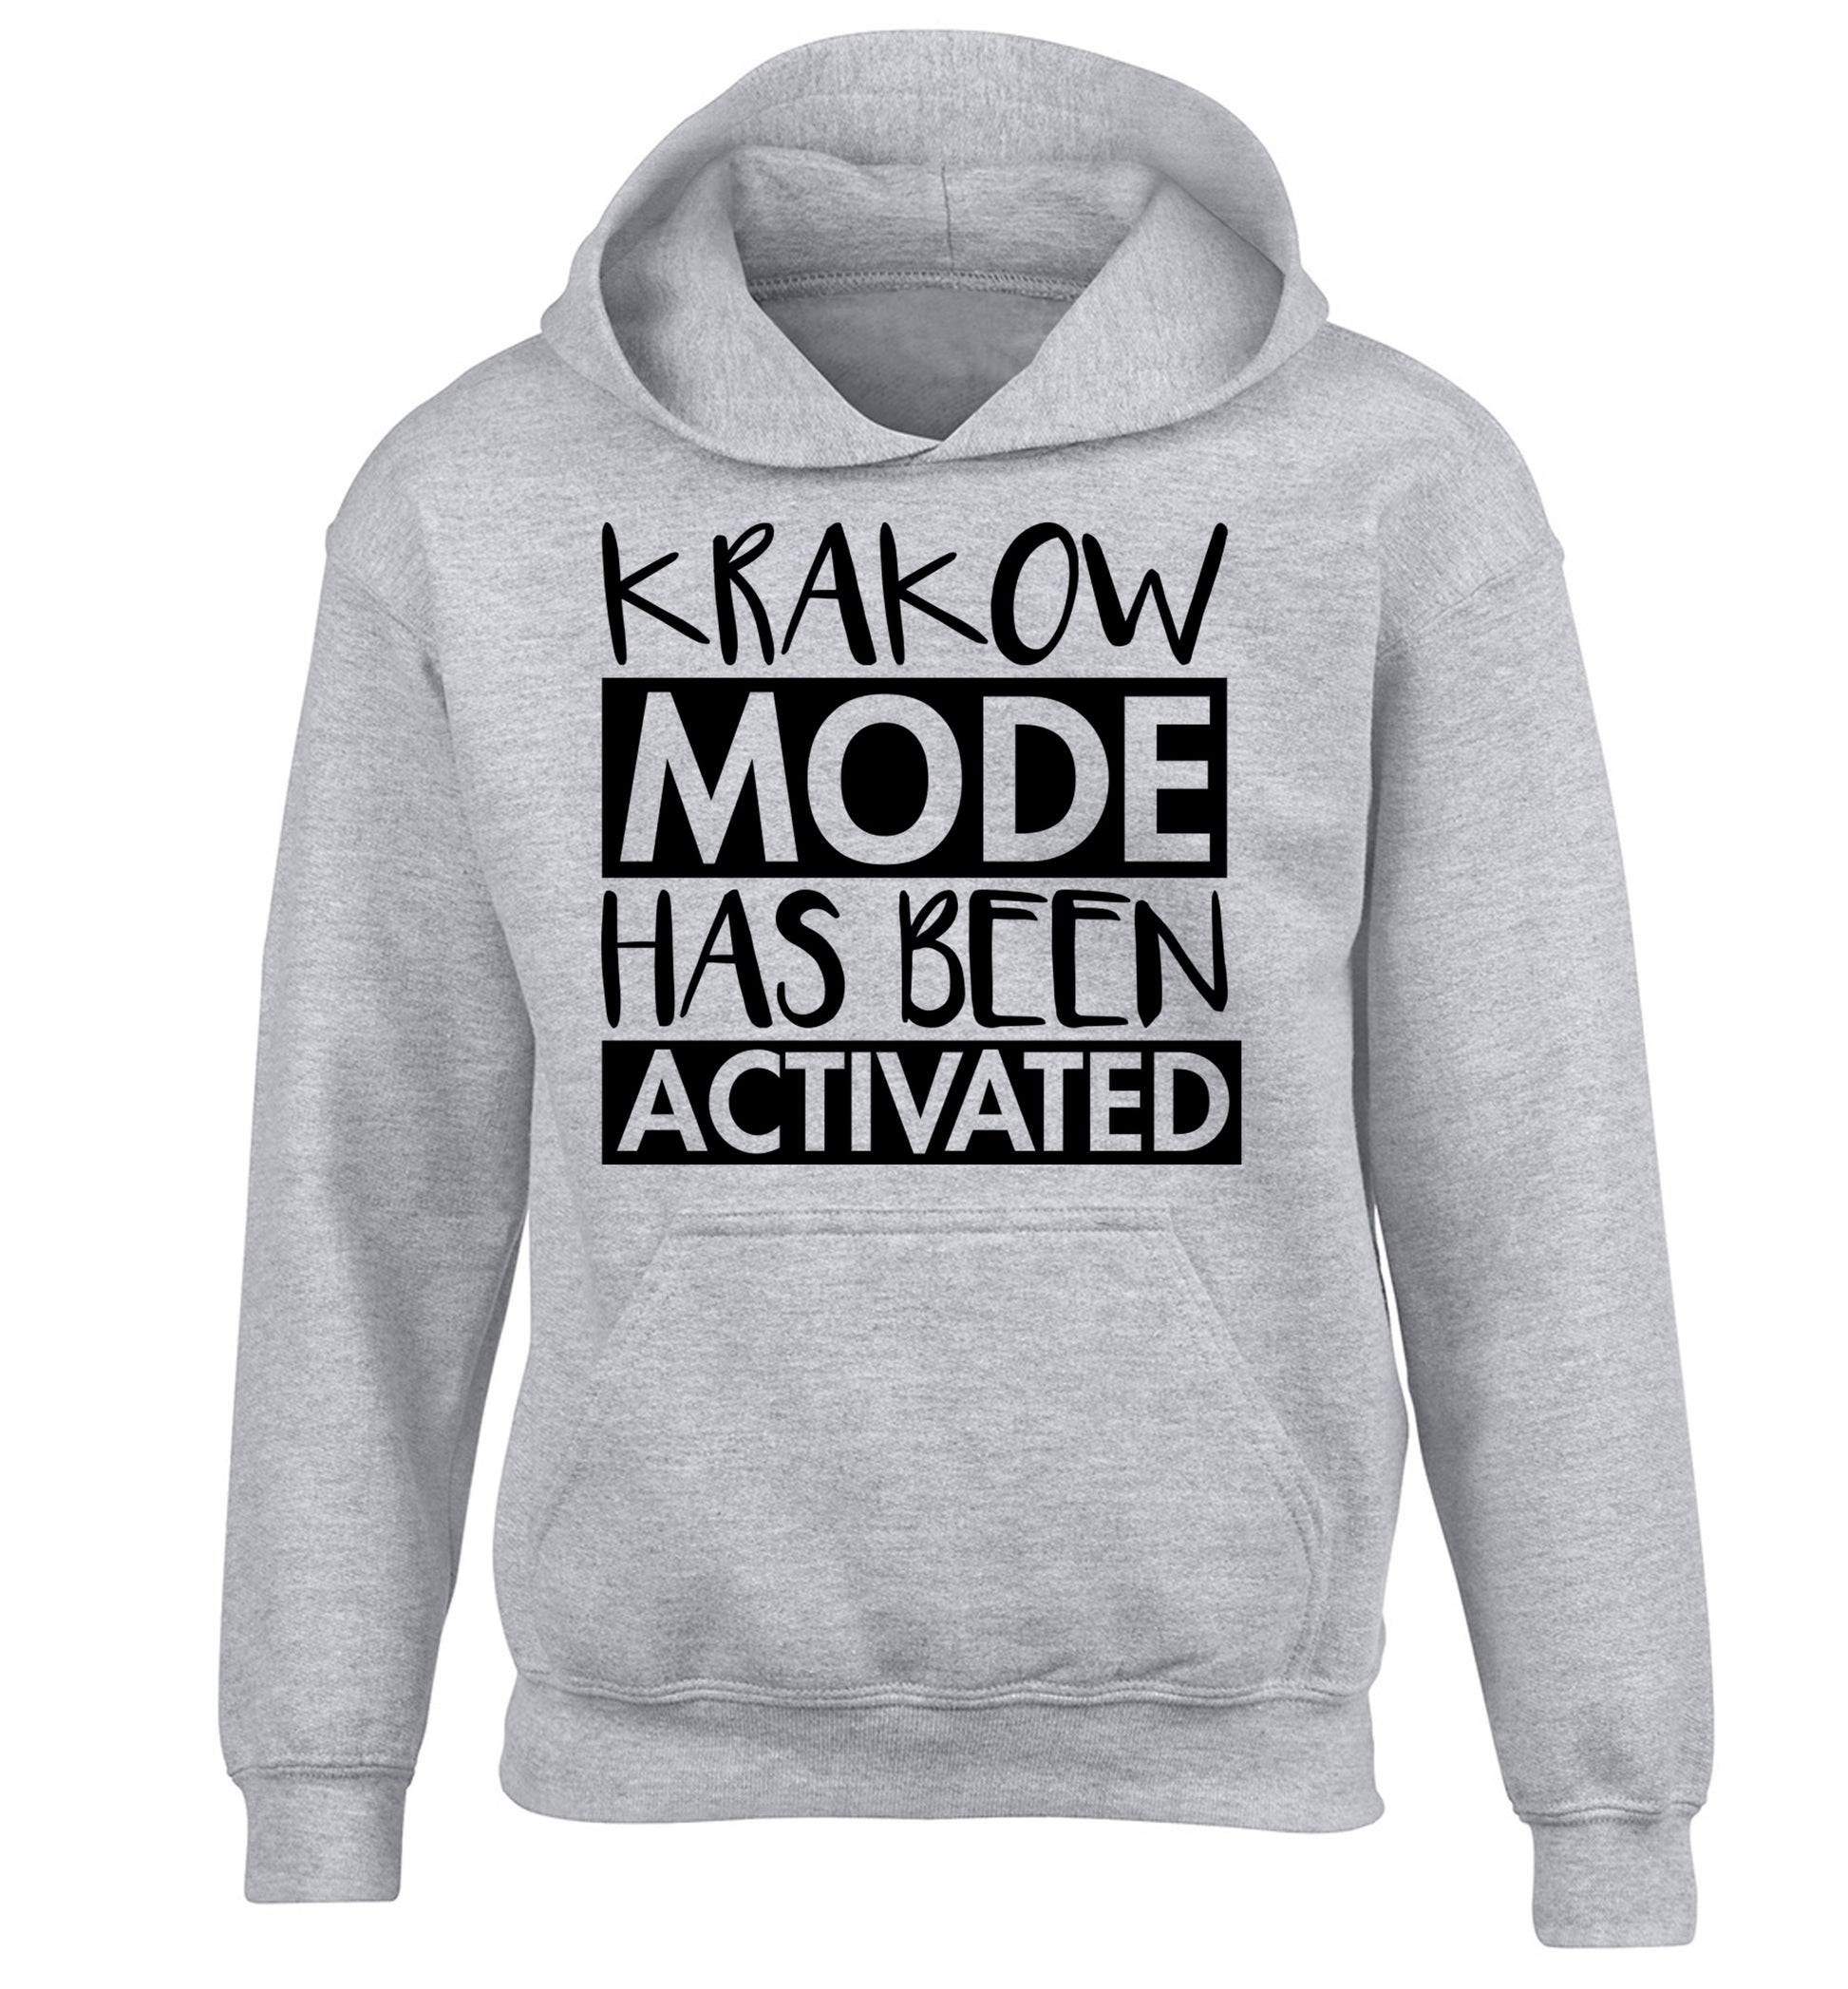 Krakow mode has been activated children's grey hoodie 12-13 Years